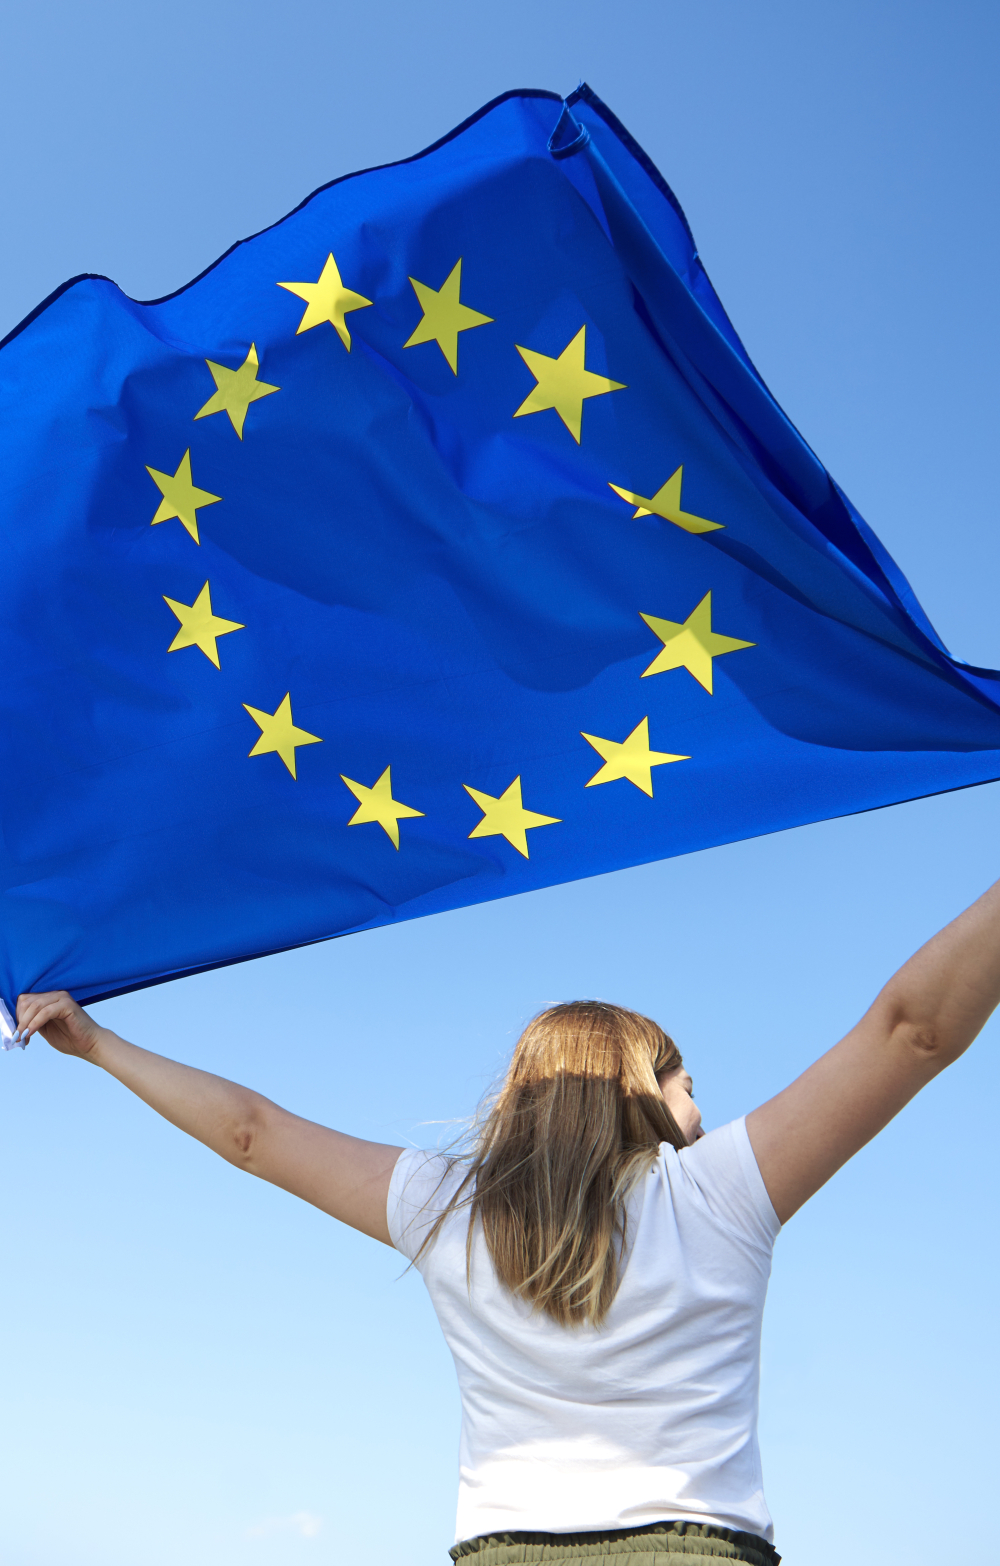 Girl flying the EU flag against a blue sky